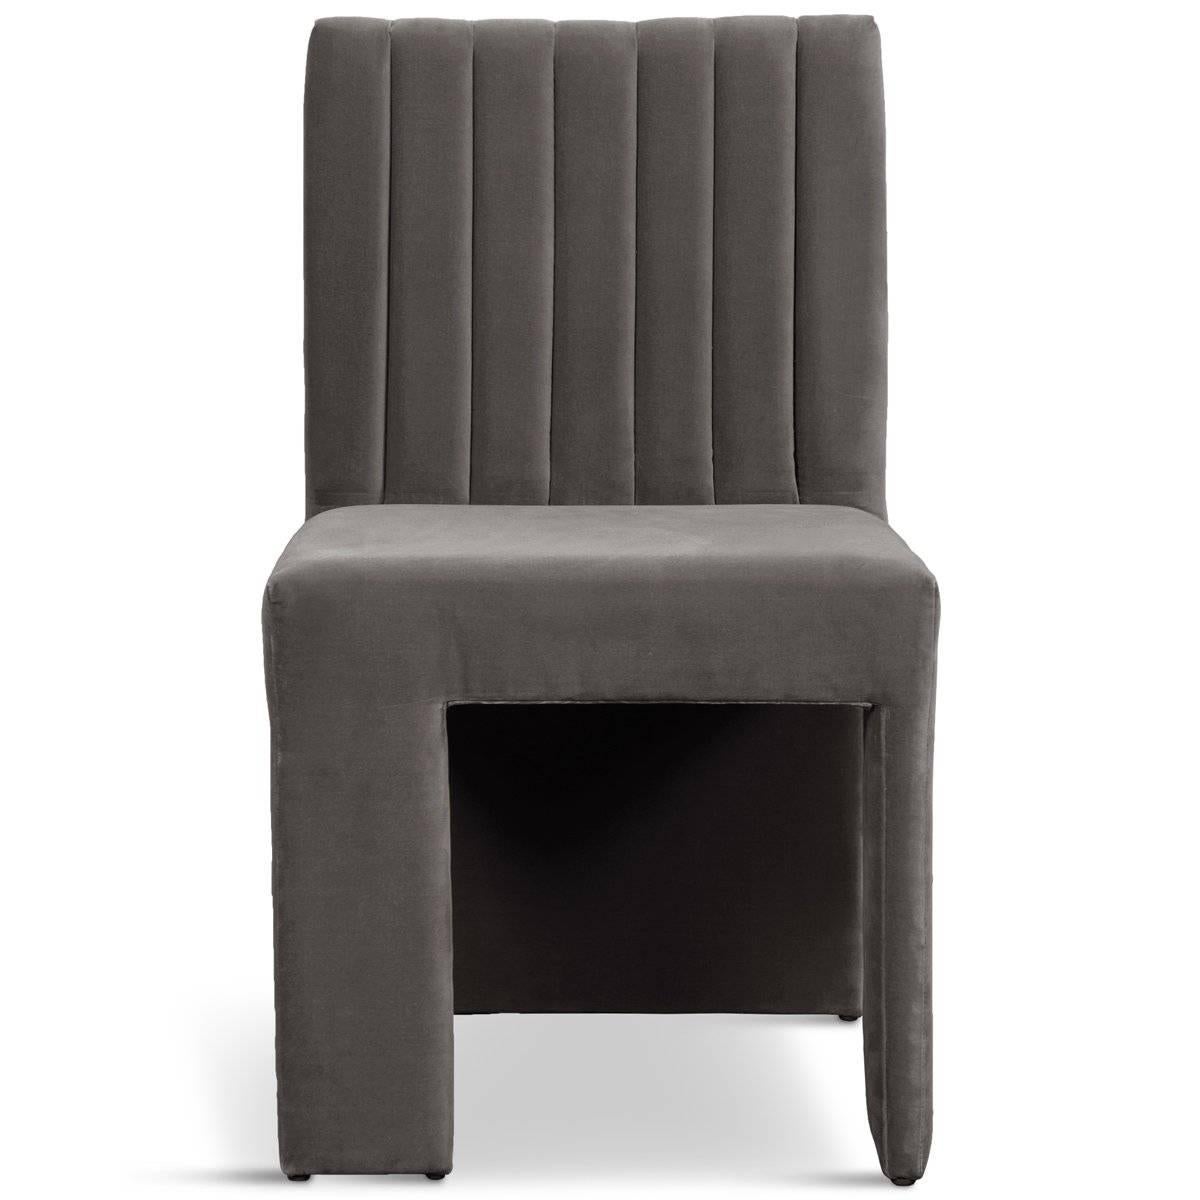 Asymmetric Modern Style St. Martin Dining Chair Lush Velvet Upholstery 7 colors For Sale 1